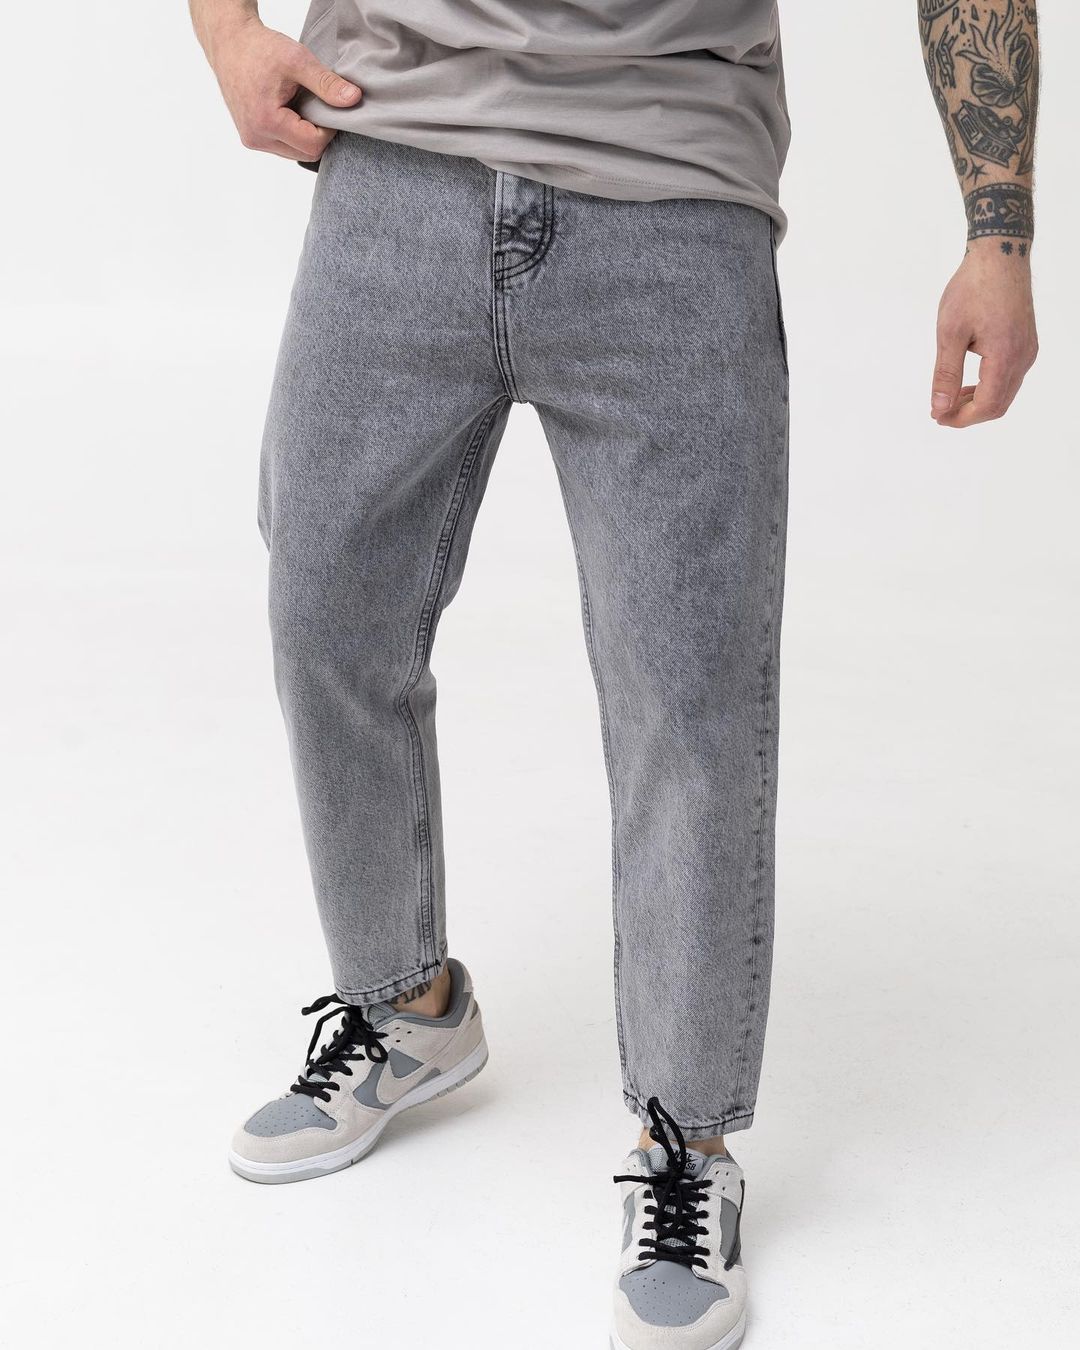 Чоловічі сірі джинси BEZET базові бойфренди